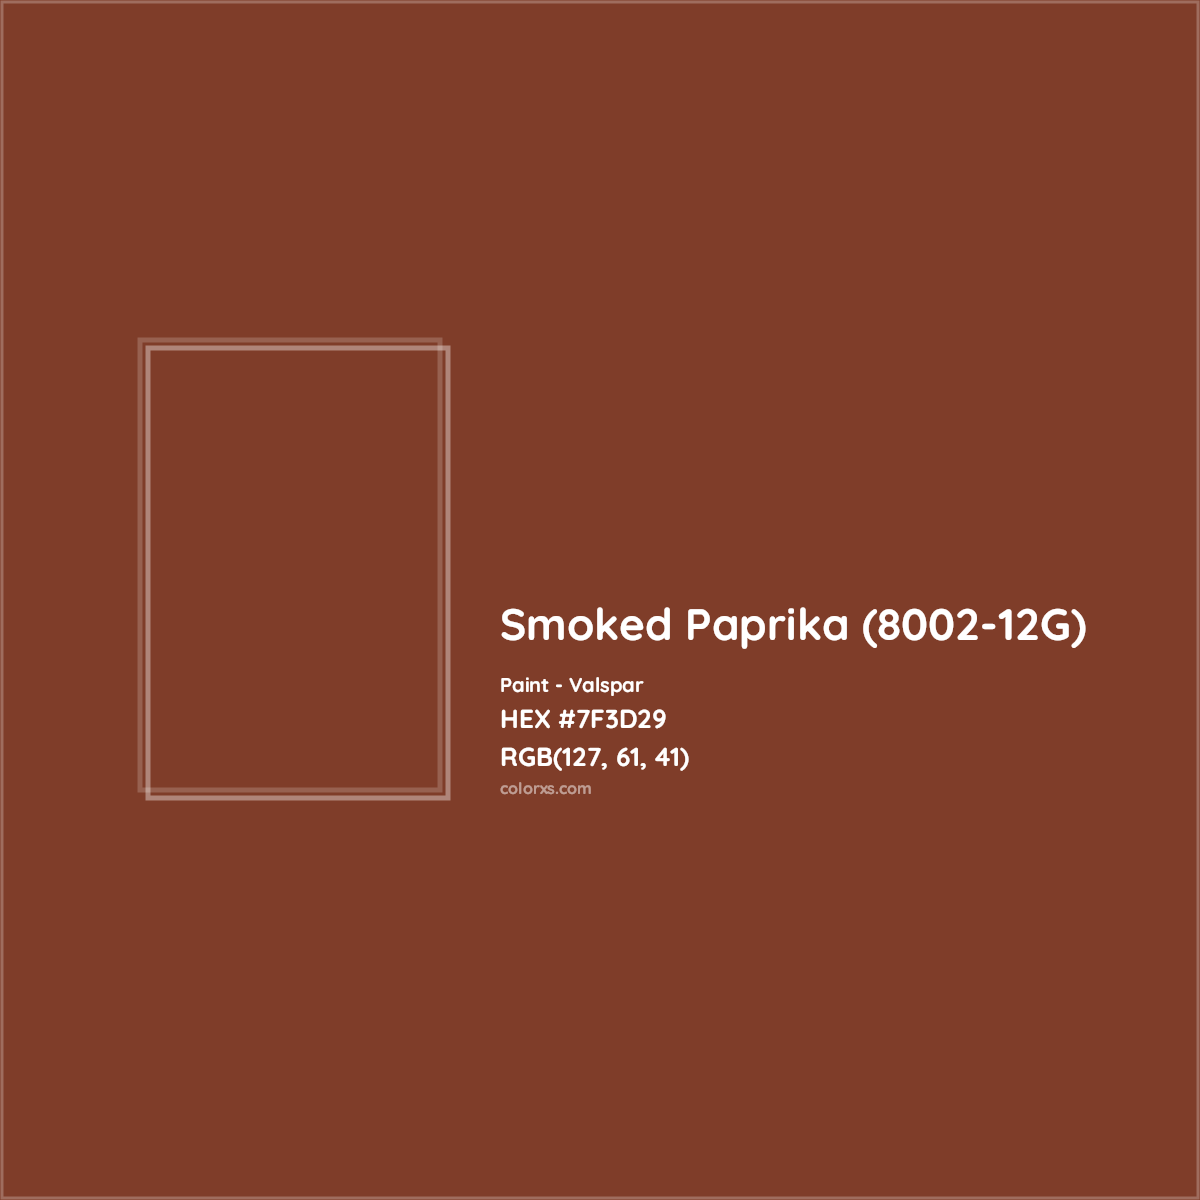 HEX #7F3D29 Smoked Paprika (8002-12G) Paint Valspar - Color Code